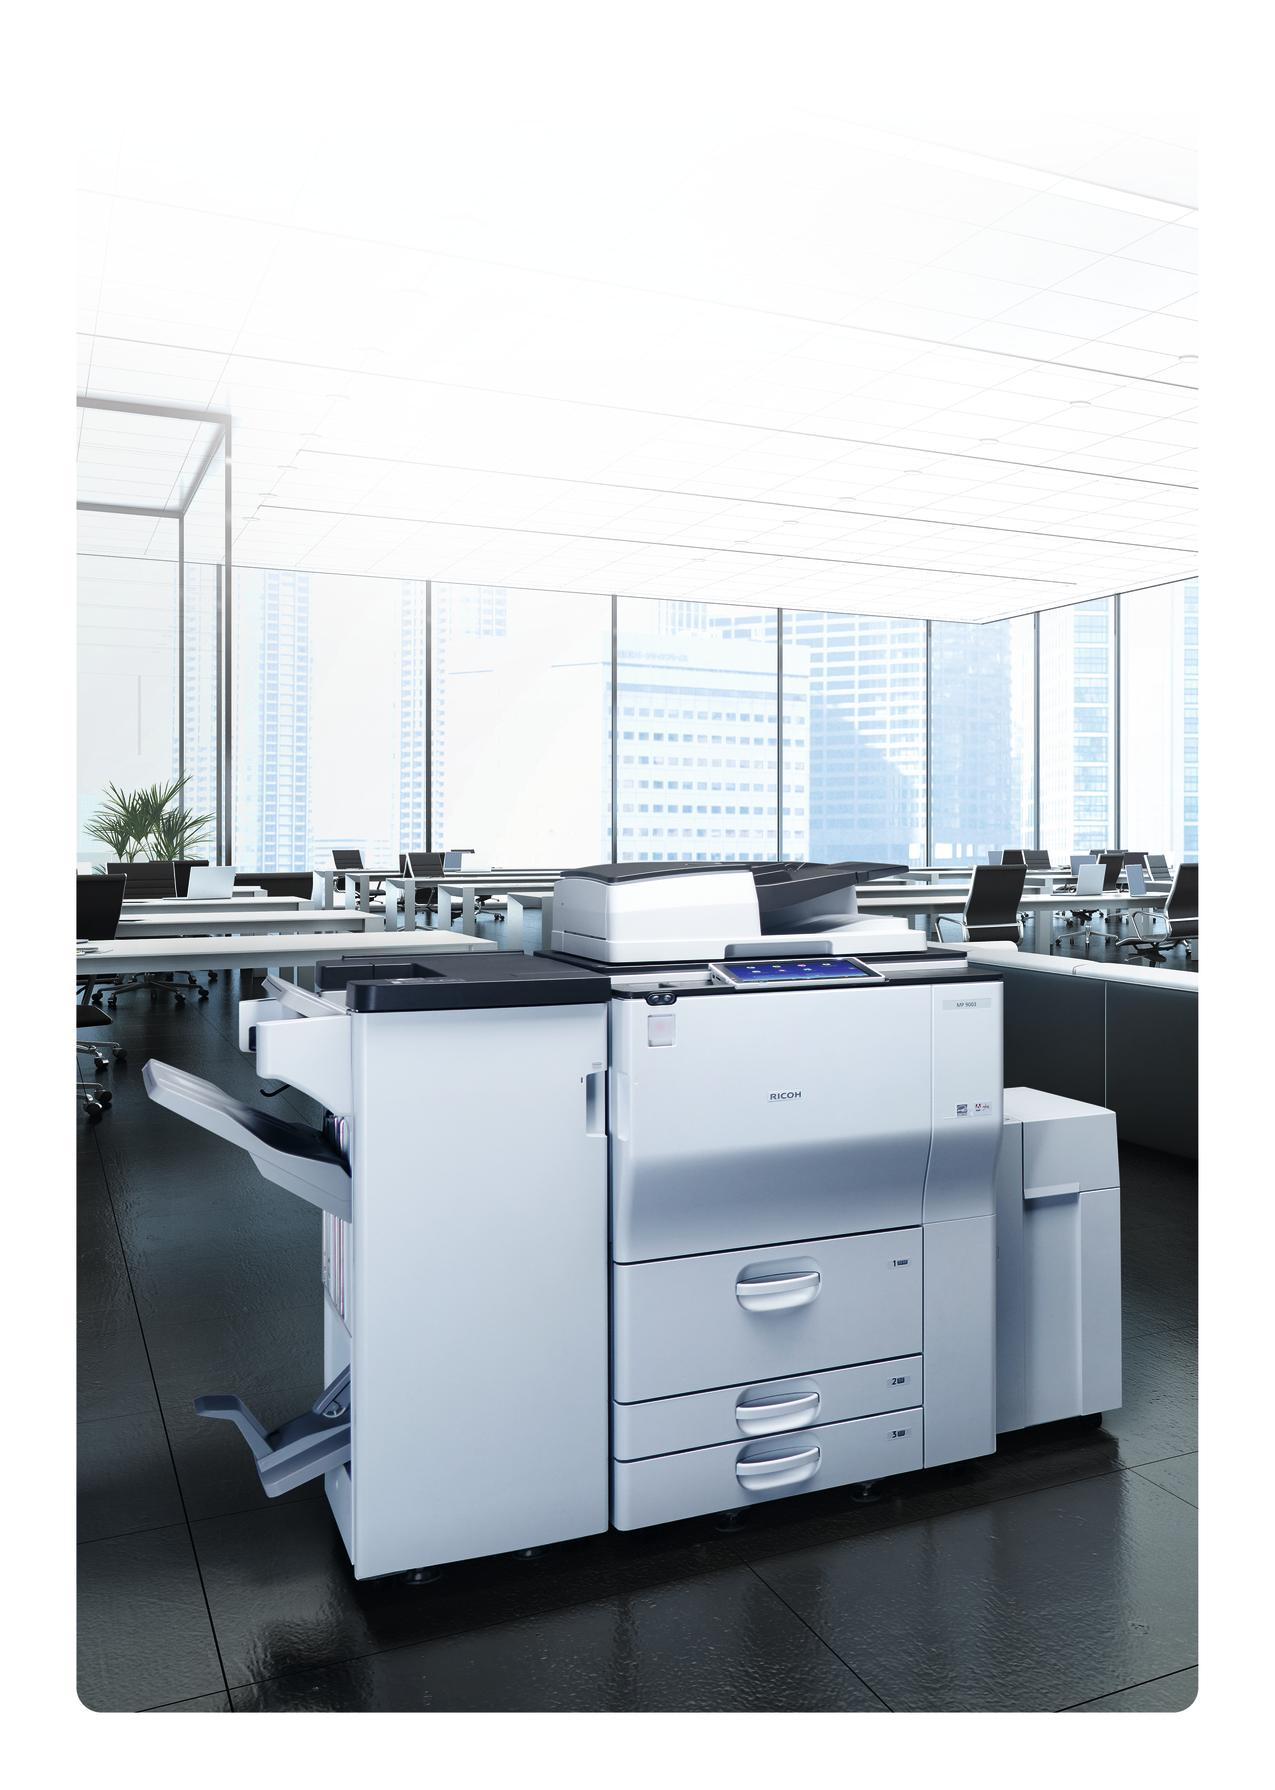 Gane agilidad y aumente la productividad de su negocio Transforme su oficina con las impresoras multifunción "smart" de calidad profesional, diseñadas para entornos con un gran volumen de impresión.